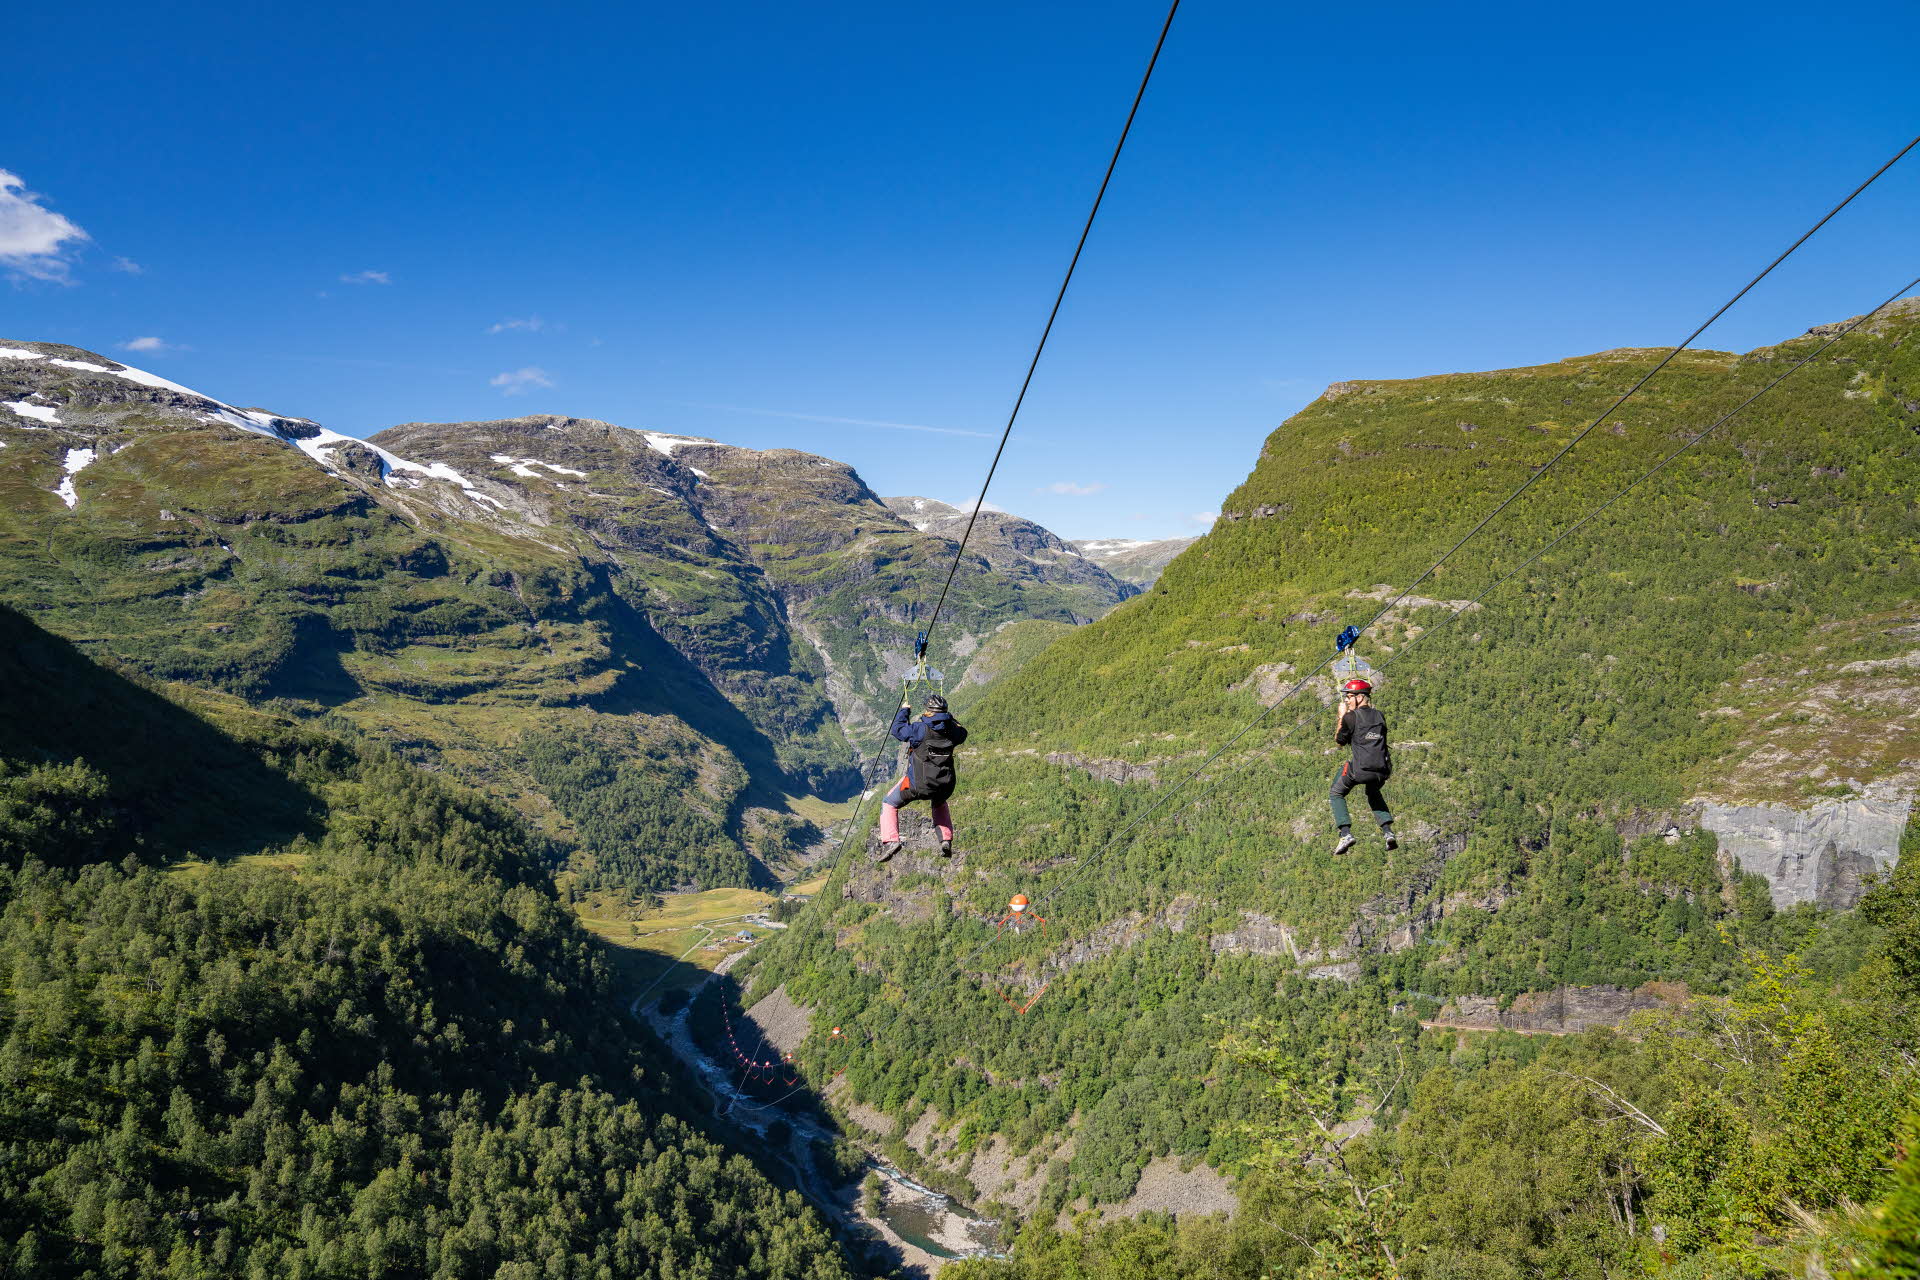 Deux personnes descendent la tyrolienne de Flåm. En arrière-plan, une vallée avec une forêt verdoyante, une rivière et les montagnes environnantes. 